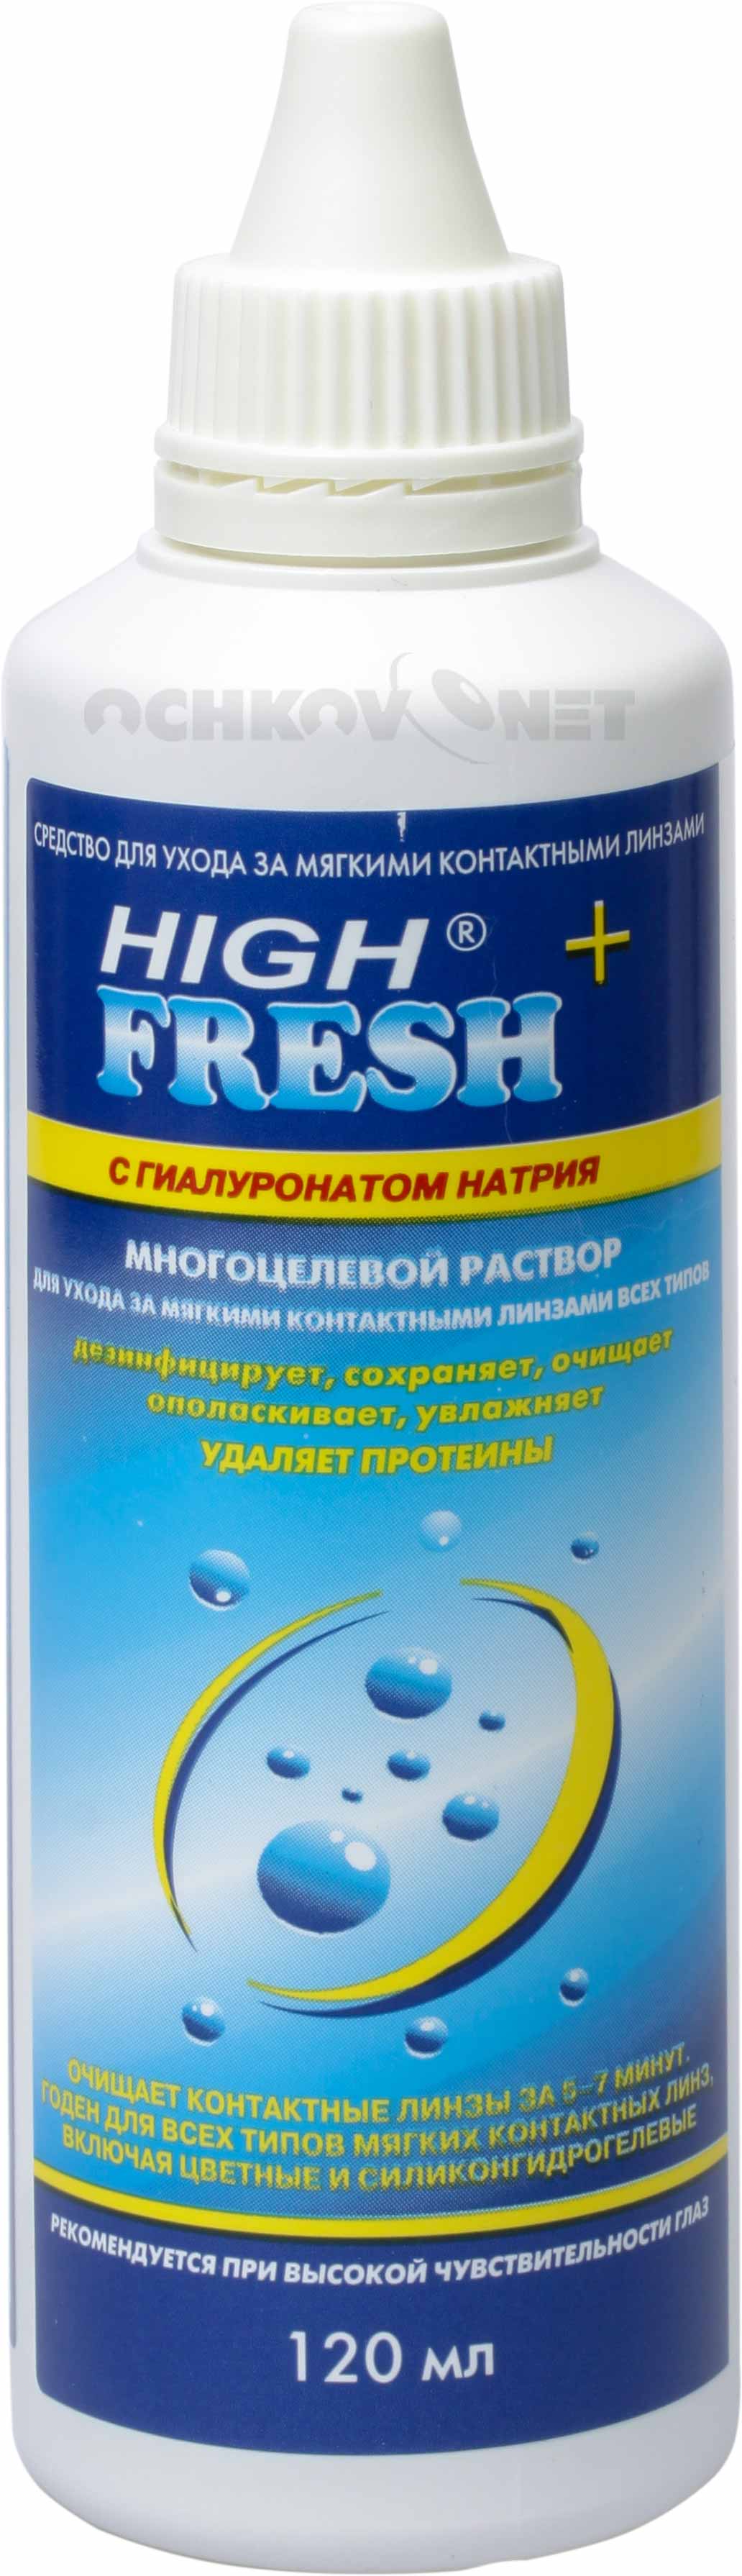 Раствор High Fresh+ с гиалуронатом натрия 120 мл, Esoform S.p.A.  - купить со скидкой